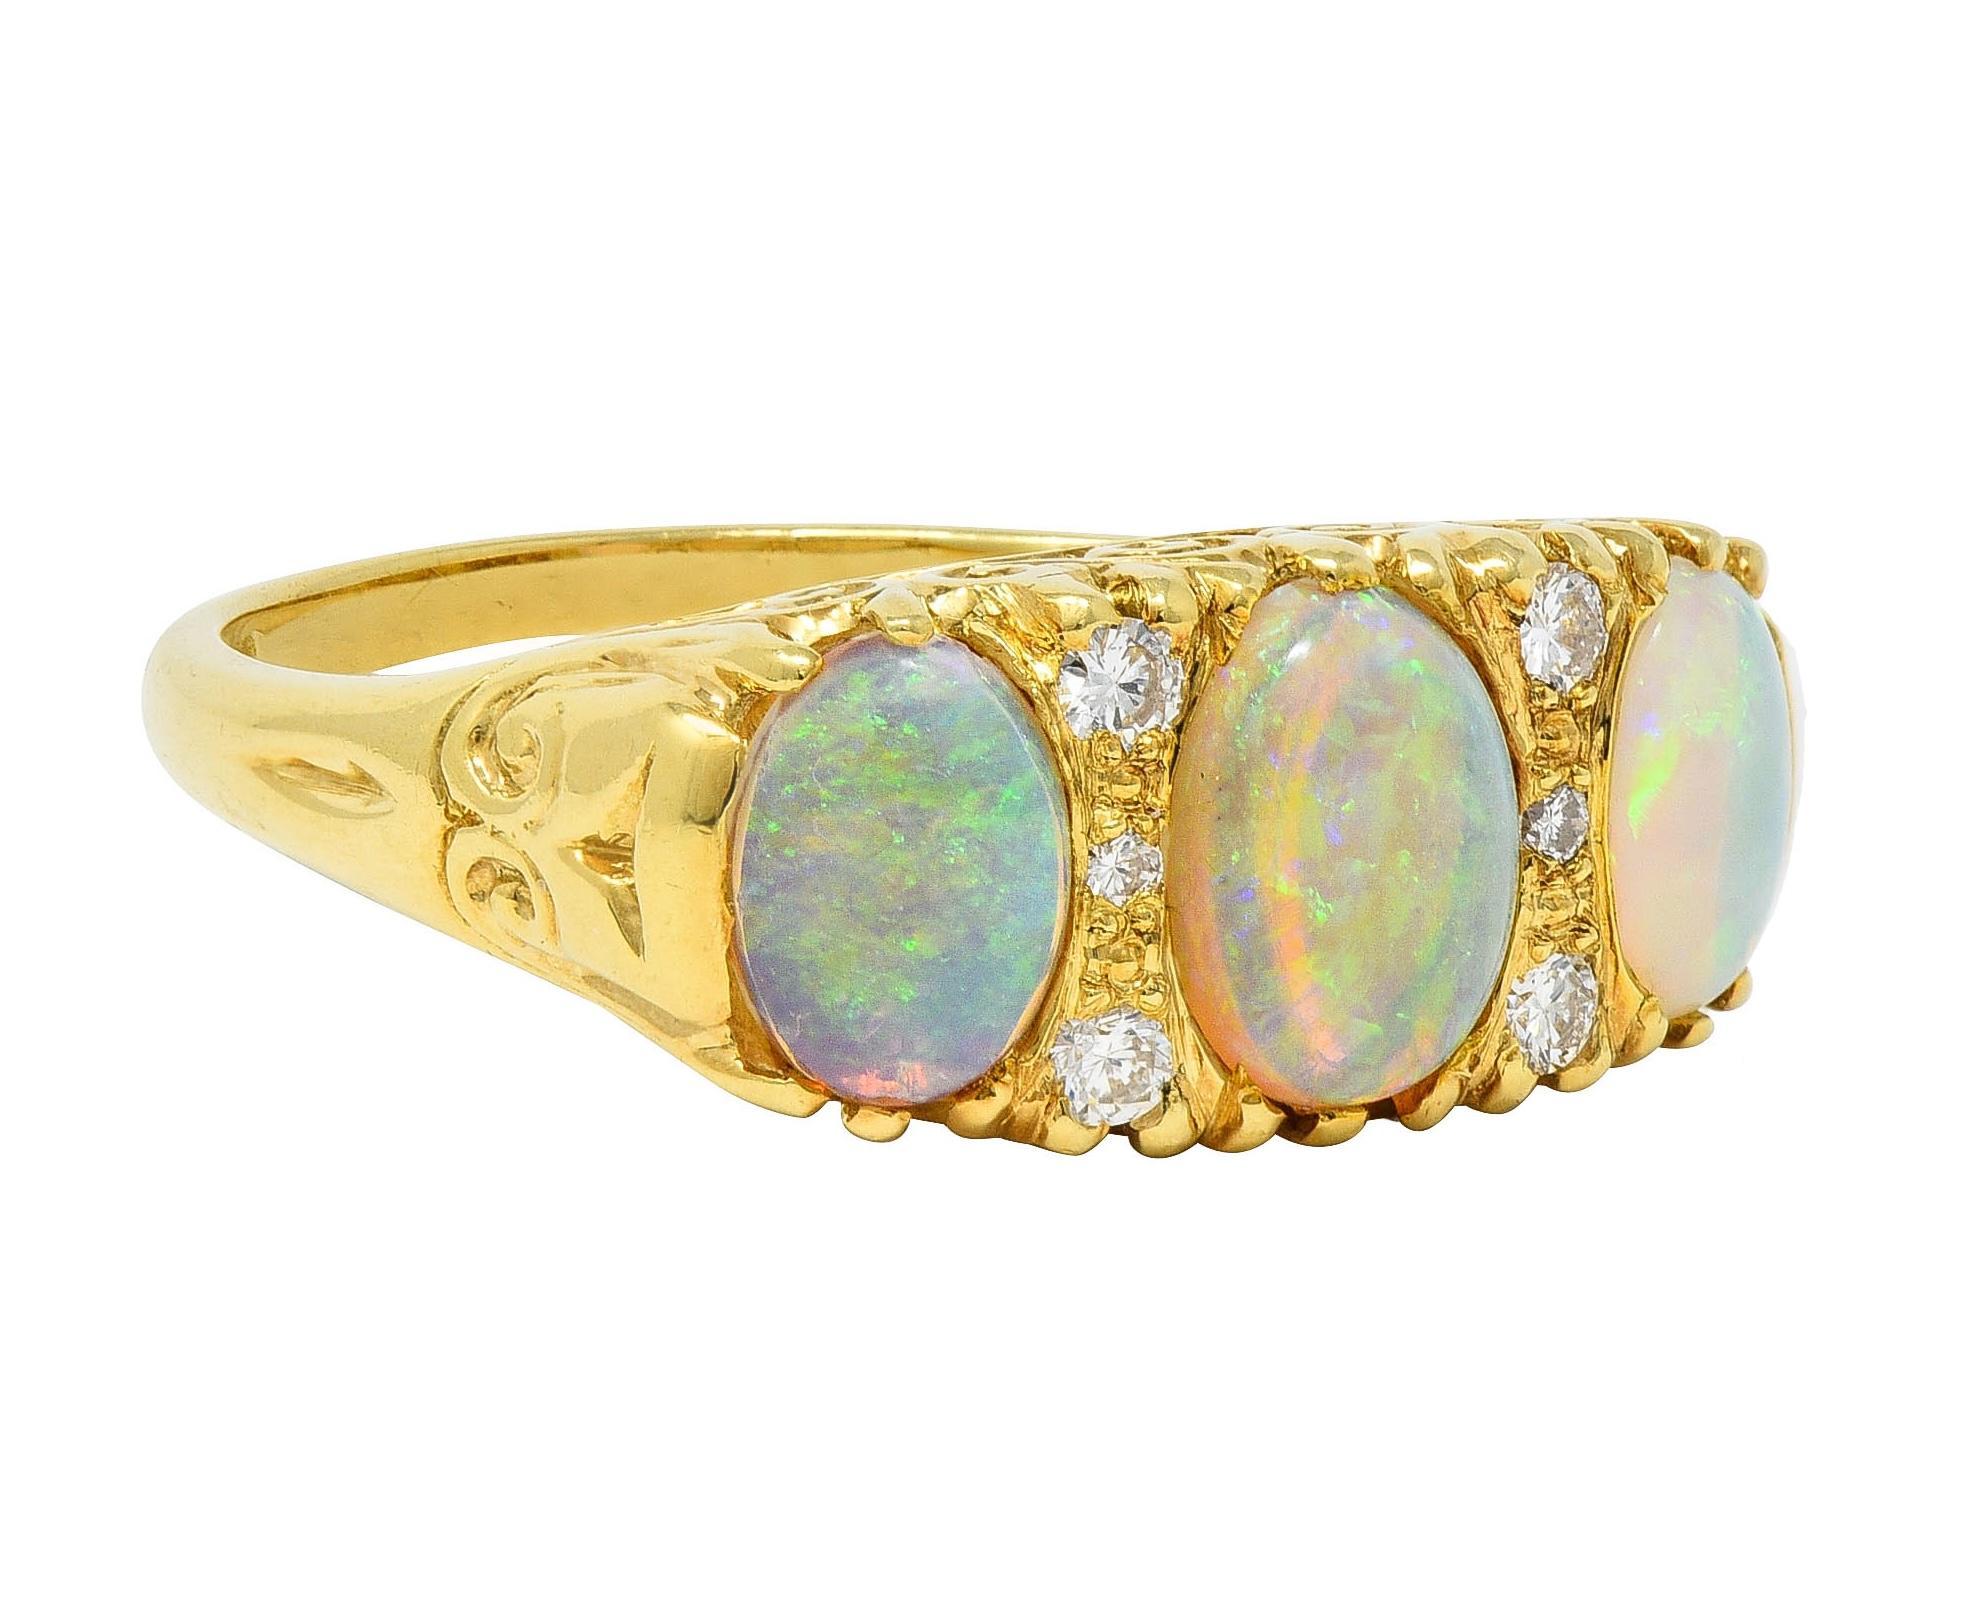 Mit drei ovalen Opal-Cabochons, die von Osten nach Westen gefasst sind 
Abgestuft und in Größen von 5,0 x 7,0 mm bis 6,0 x 9,0 mm 
Transluzentes Weiß in der Körperfarbe mit starkem blauen und grünen Farbenspiel
Akzentuiert durch runde Diamanten im